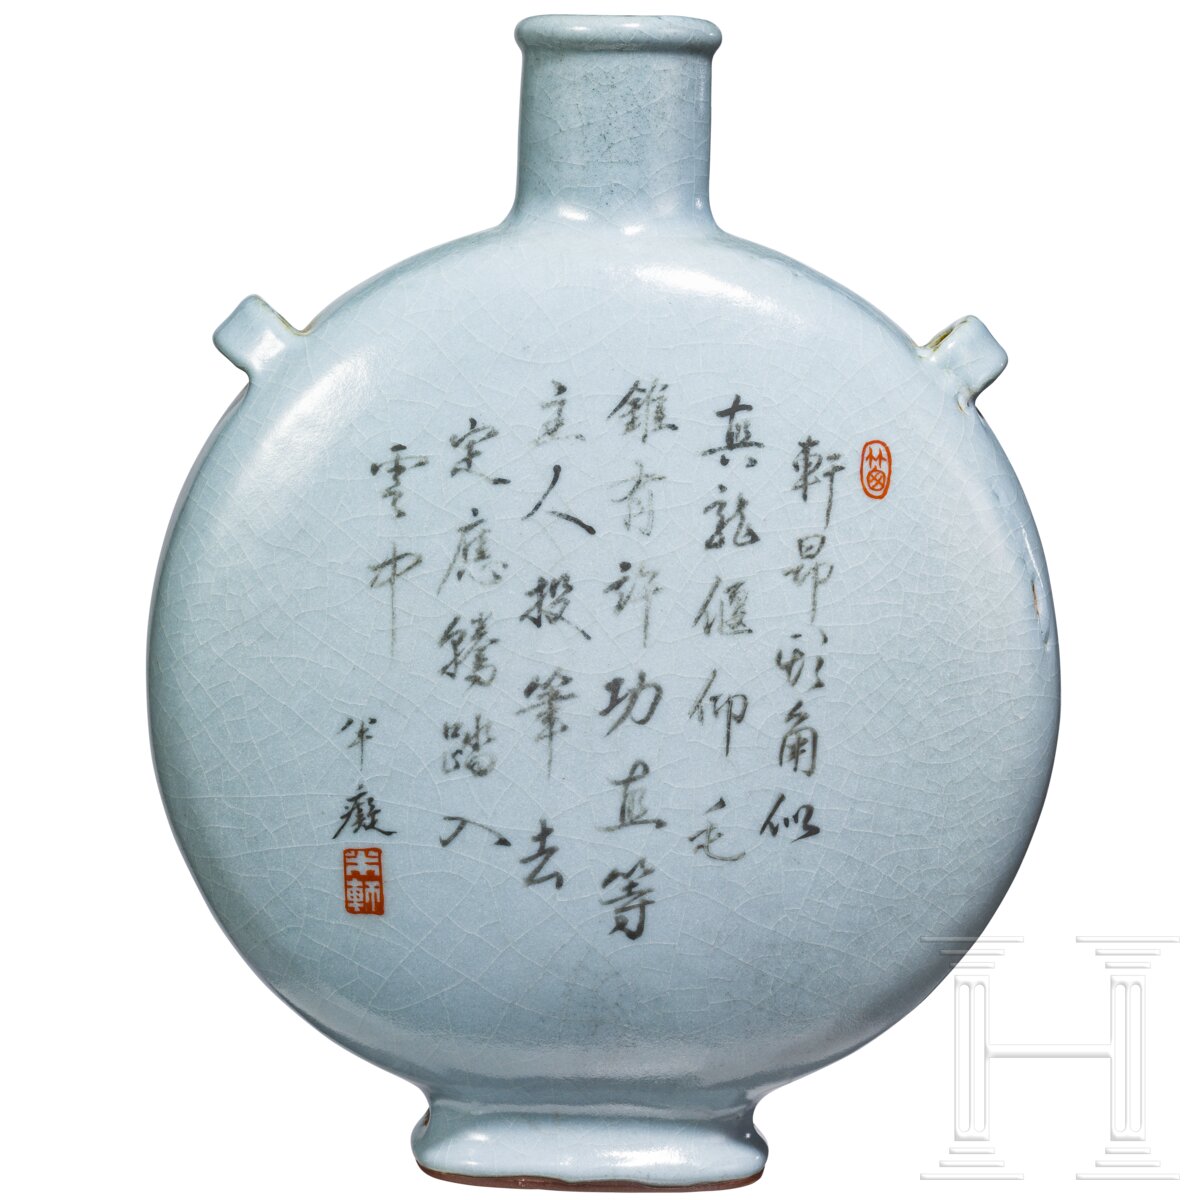 Mondflasche aus Guanware mit Qianlong-Sechszeichenmarke, China, wahrscheinlich aus der Zeit